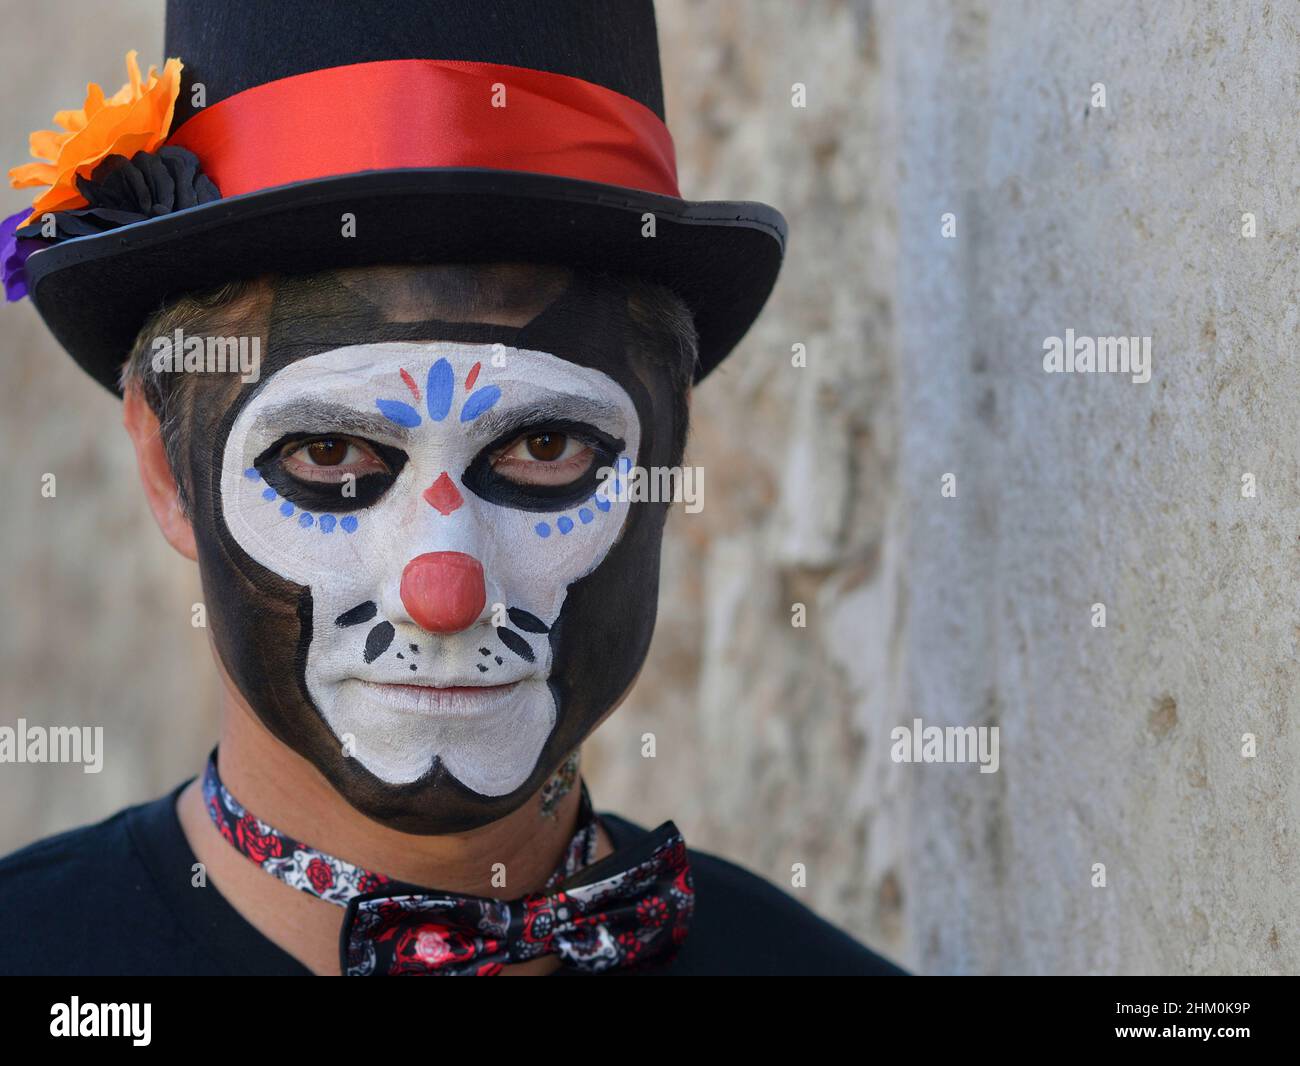 Der junge kaukasische Mann mit gruseliger traditioneller weißer Gesichtsbemalung trägt am Tag der Toten (Día de los Muertos) einen schwarzen Hut und blickt auf den Betrachter. Stockfoto